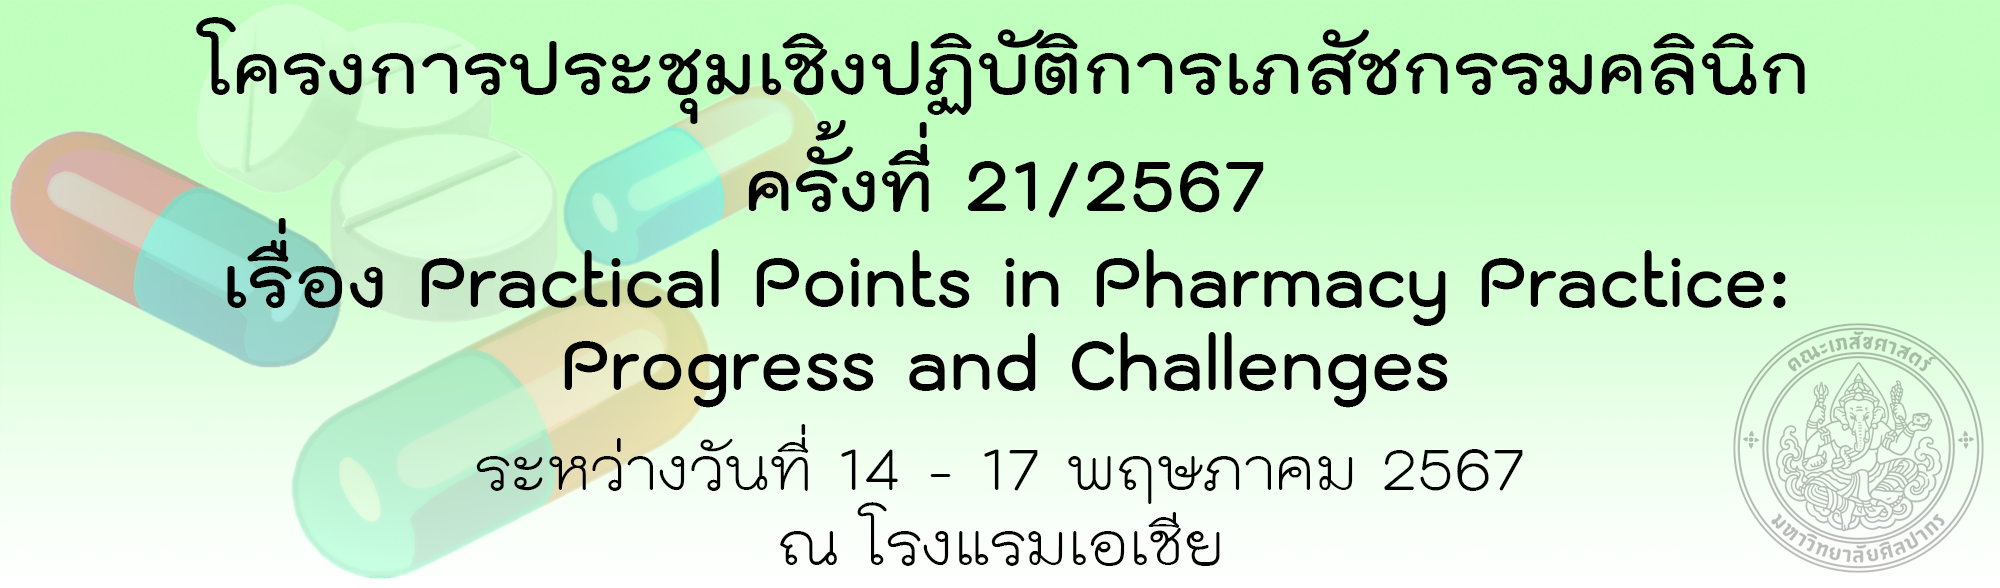 โครงการประชุมเชิงปฏิบัติการเภสัชกรรมคลินิก ครั้งที่ 21/2567 เรื่อง Practical Points in Pharmacy Practice: Progress and Challenges